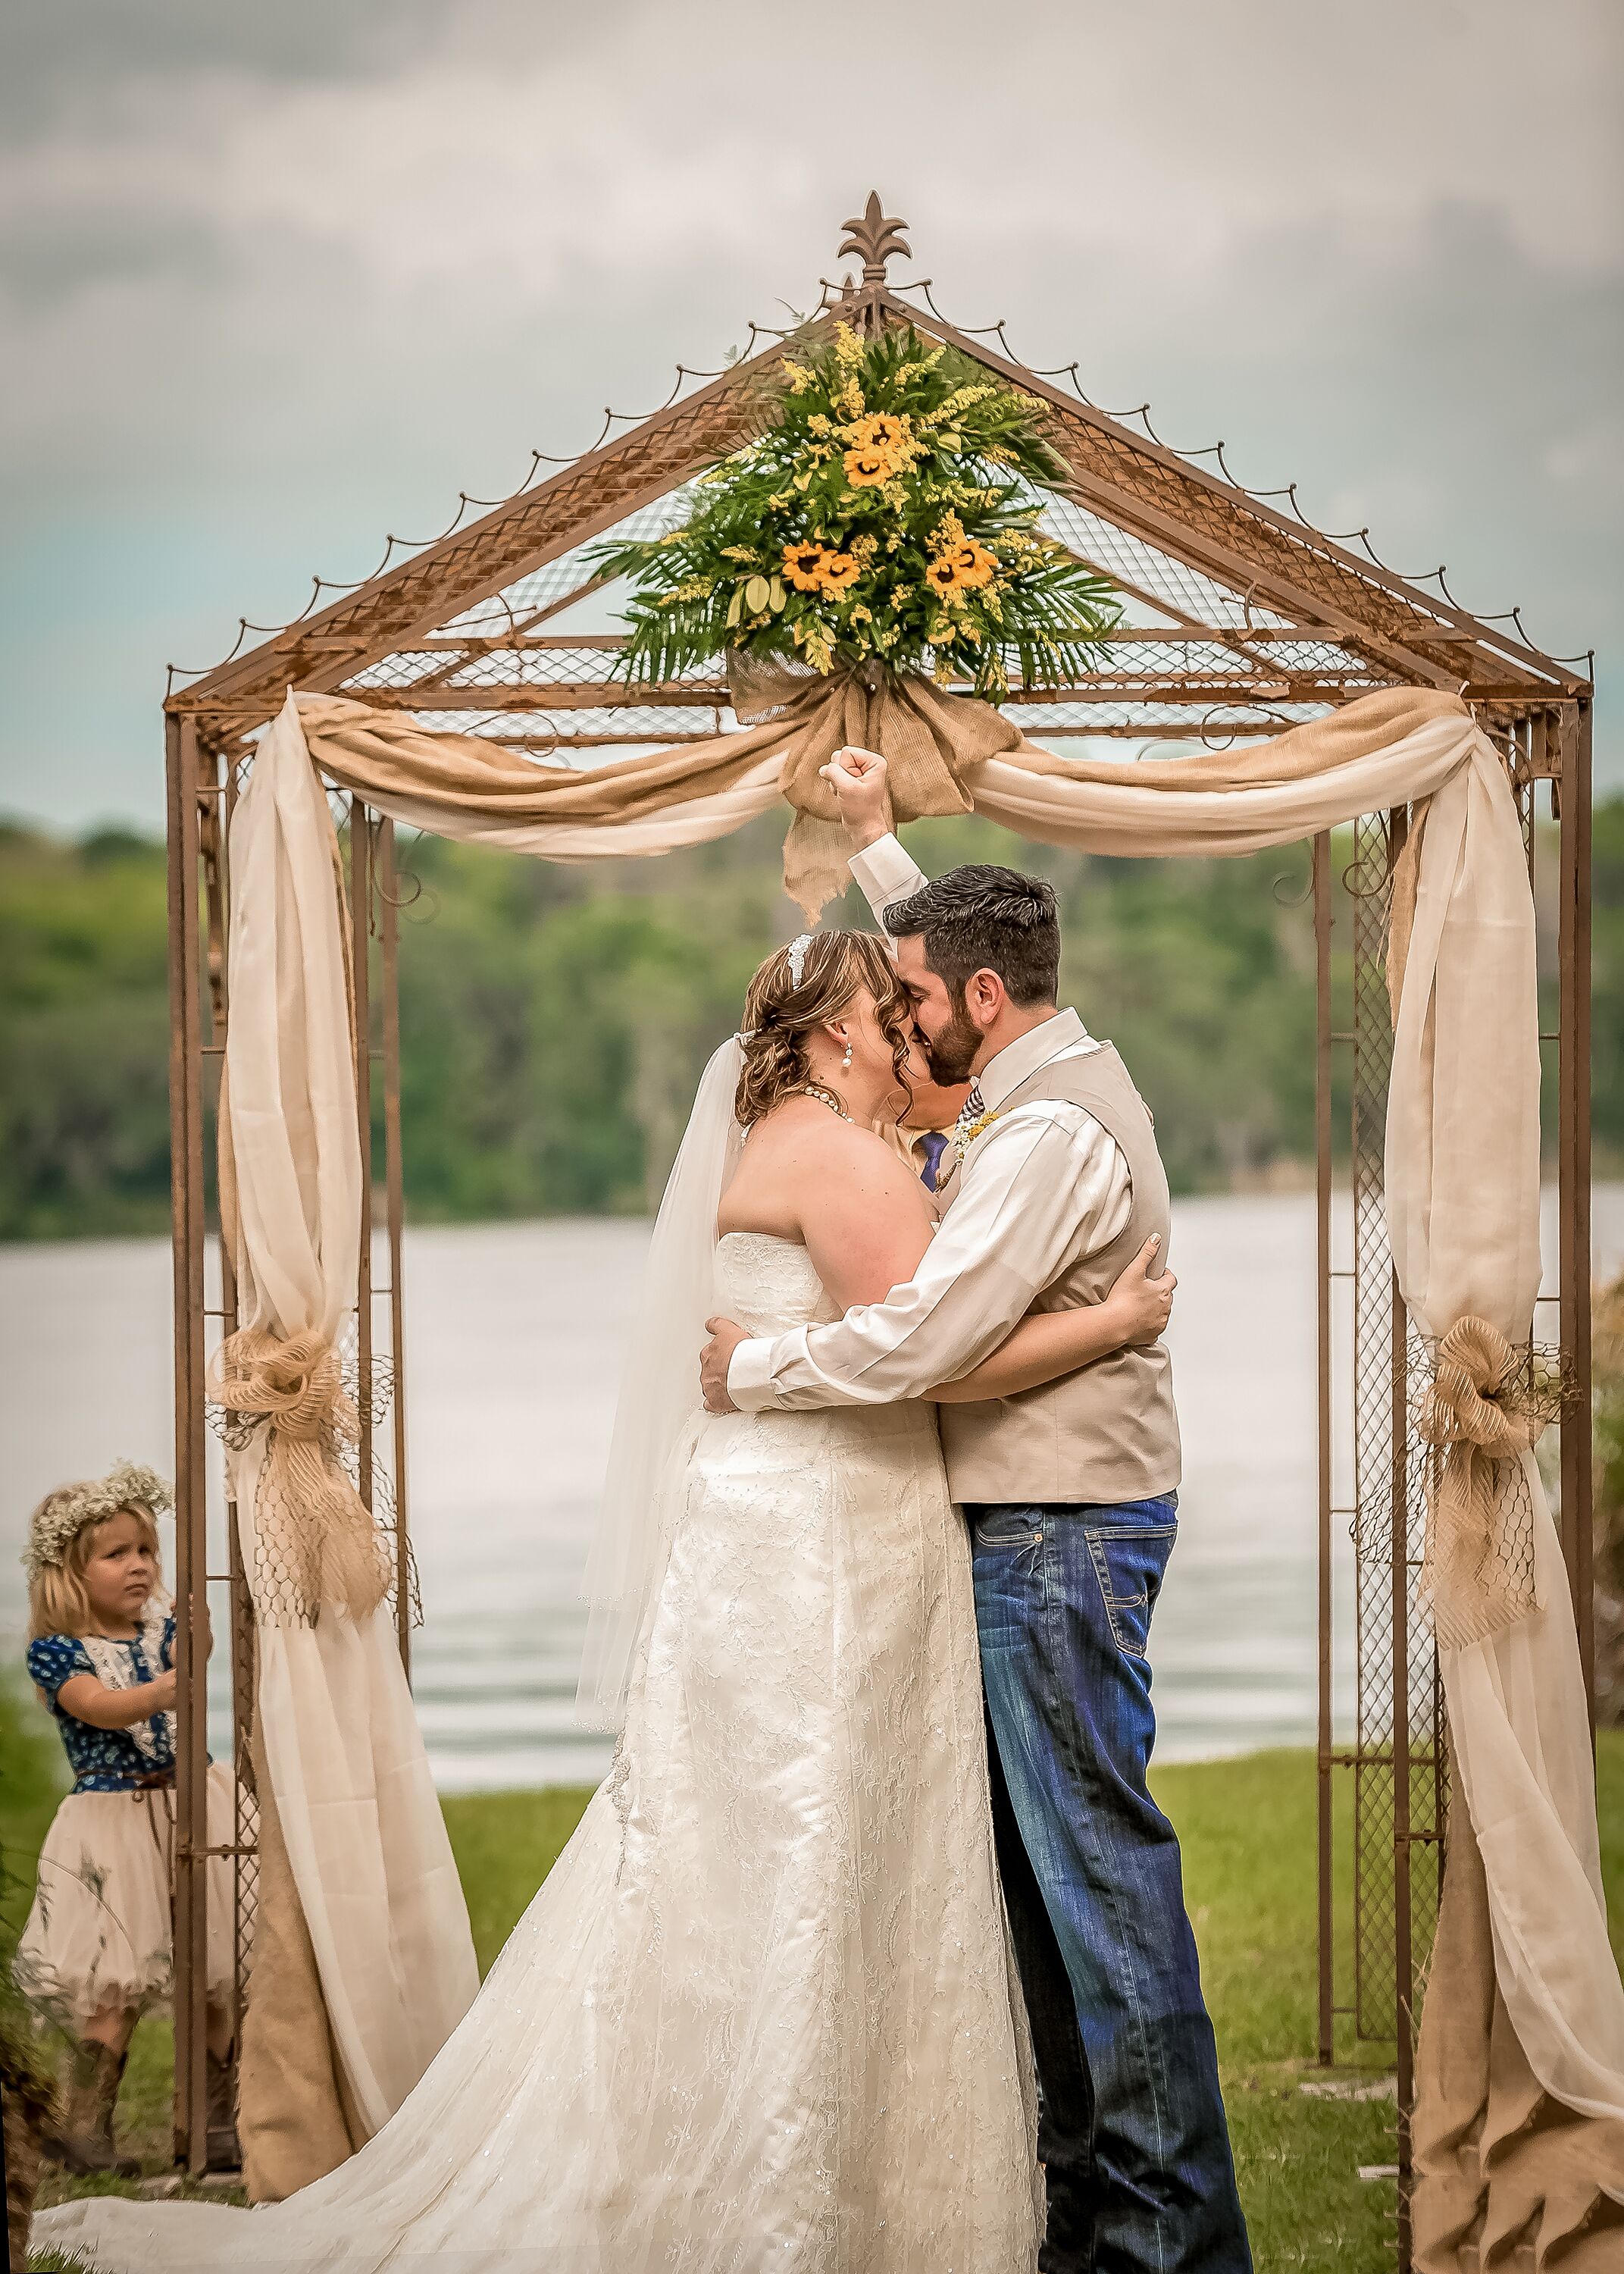 A Rustic, Outdoor Wedding in DeLand, Florida